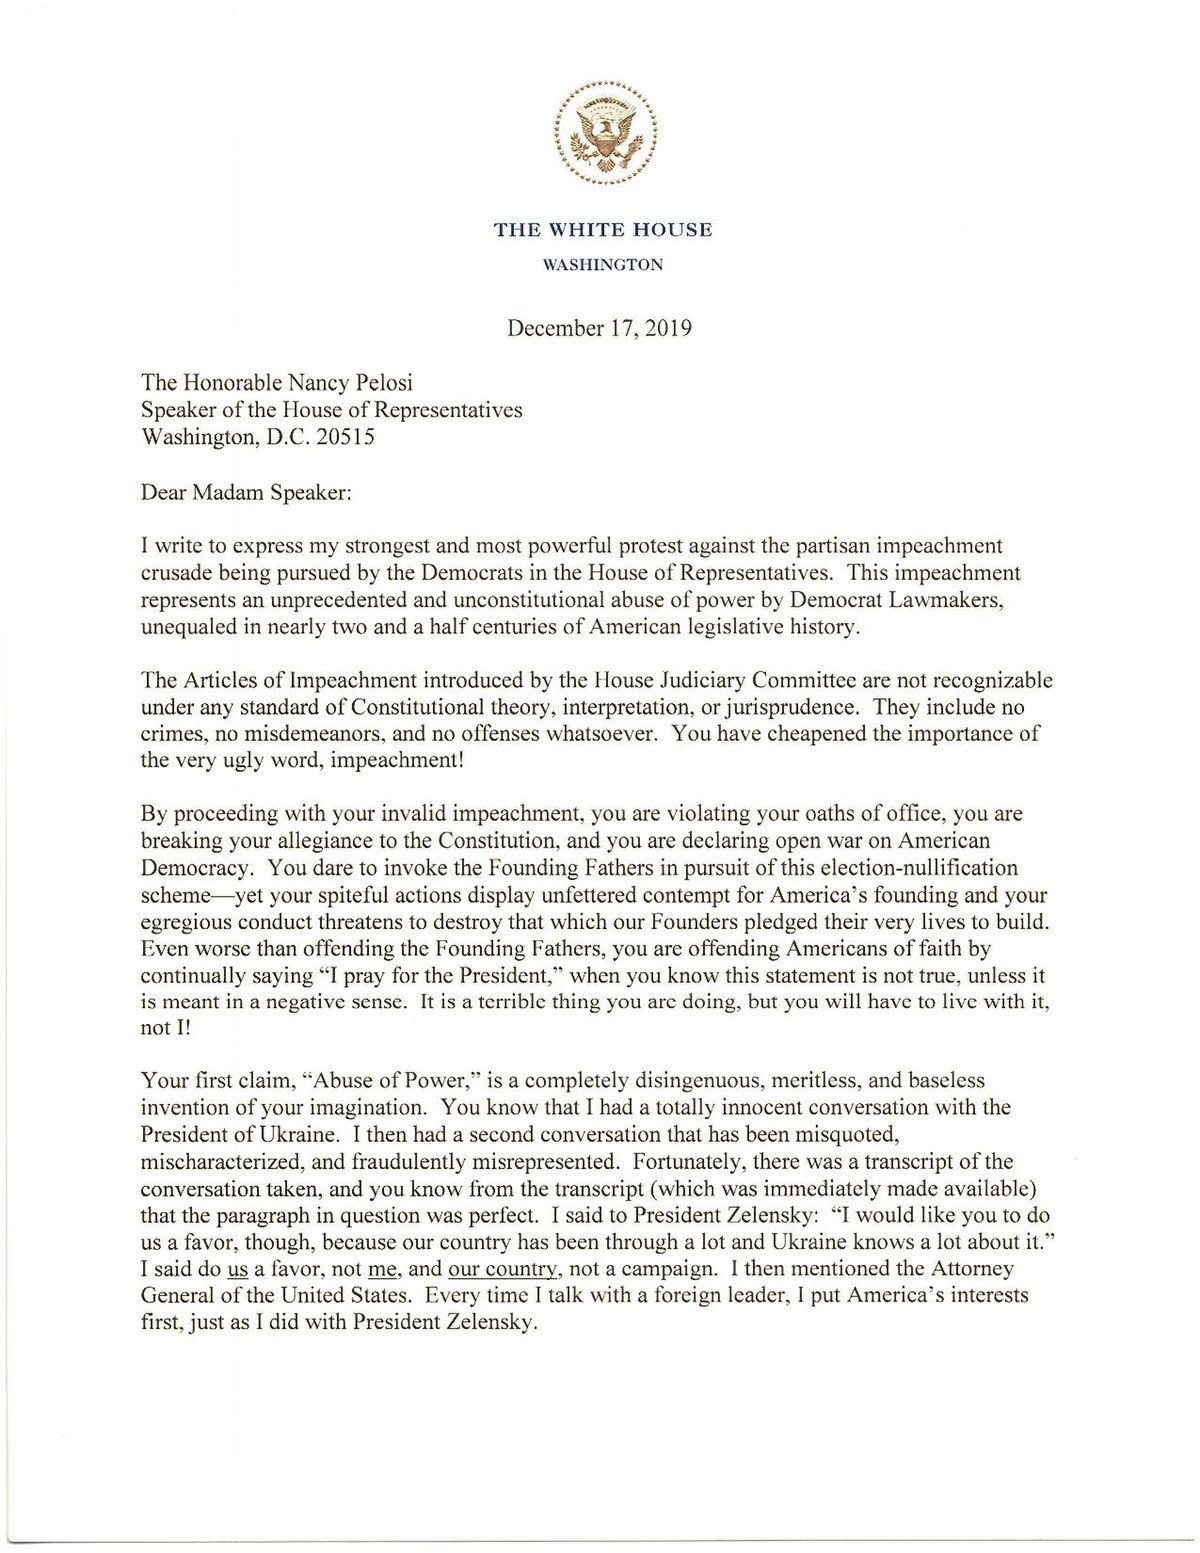 File:Letter from President Trump to House Speaker Nancy Pelosi